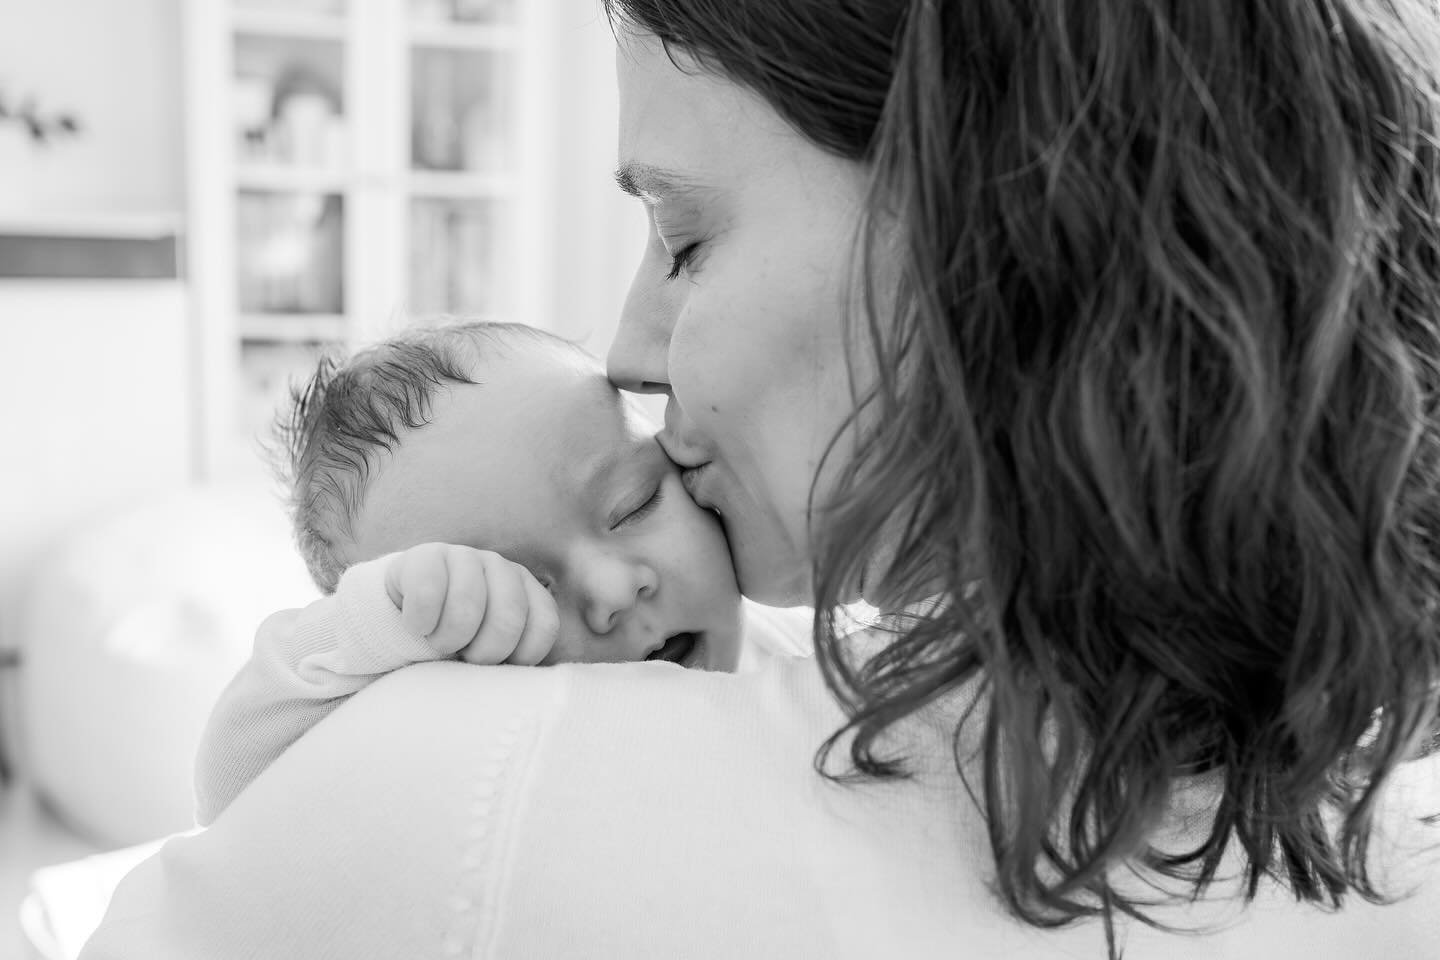 Mama-Liebe pur!!! Ich liebe es, wenn ich solche Momente festhalten kann ❤️
@purelebensfreude 

#familienfotografie #newbornfotografie #babyshooting #fotografiefreiburg